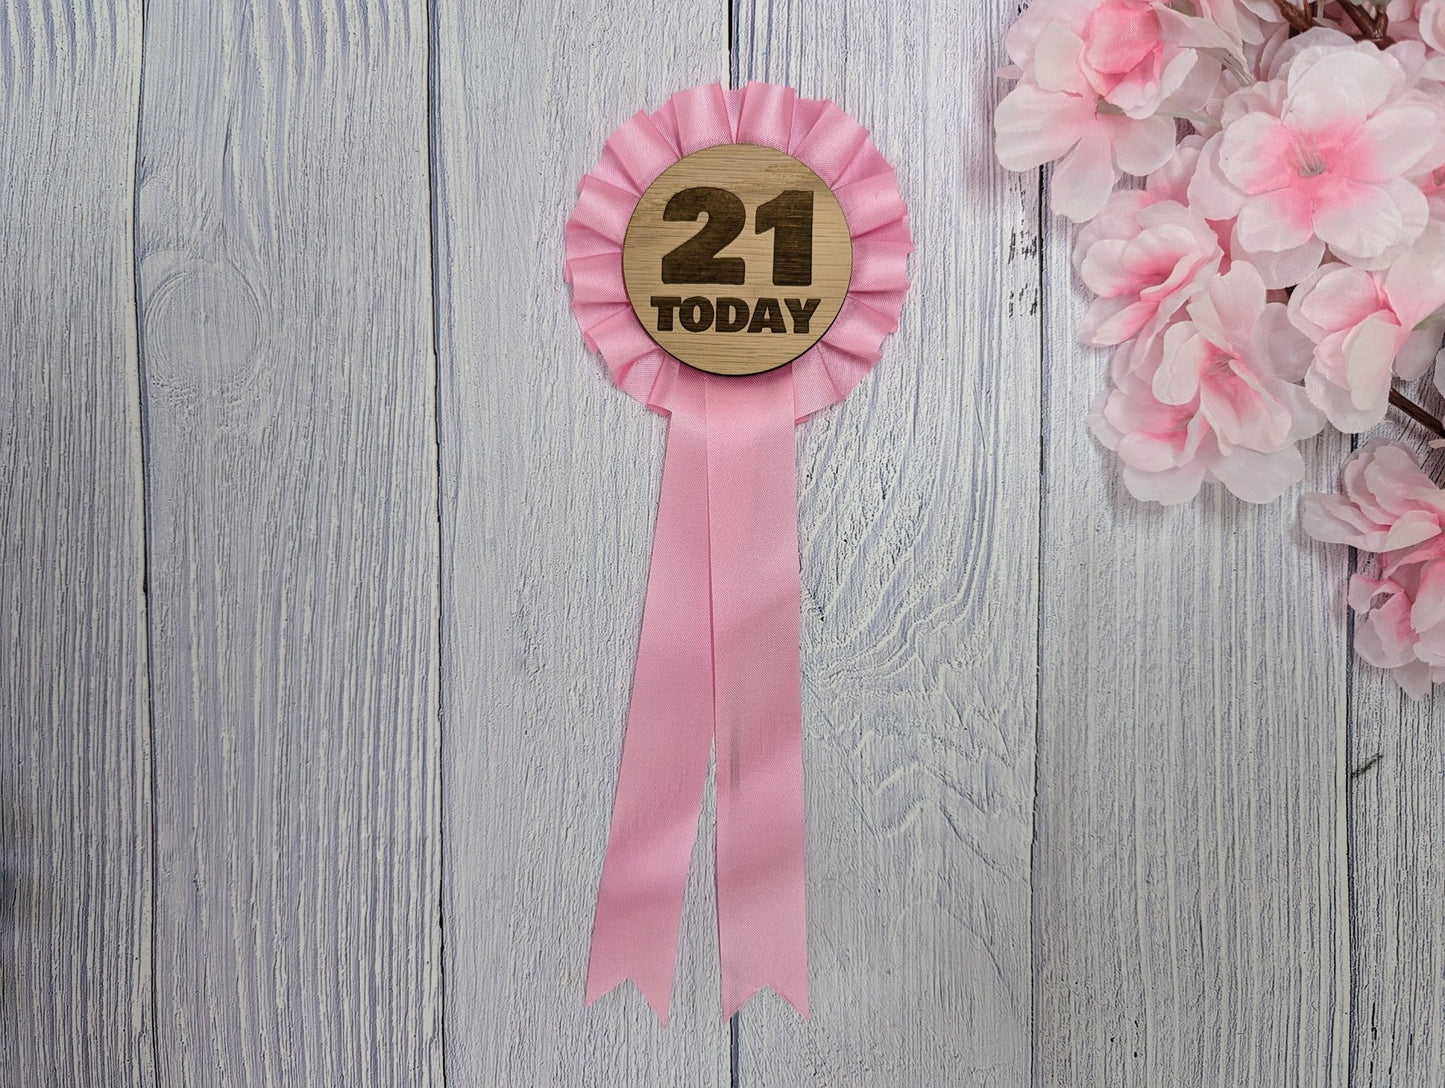 Wooden Rosette for 21st Birthday Celebration - '21 Today' Award Ribbon - Elegant Oak Veneer - Eco-Friendly Packaging - CherryGroveCraft